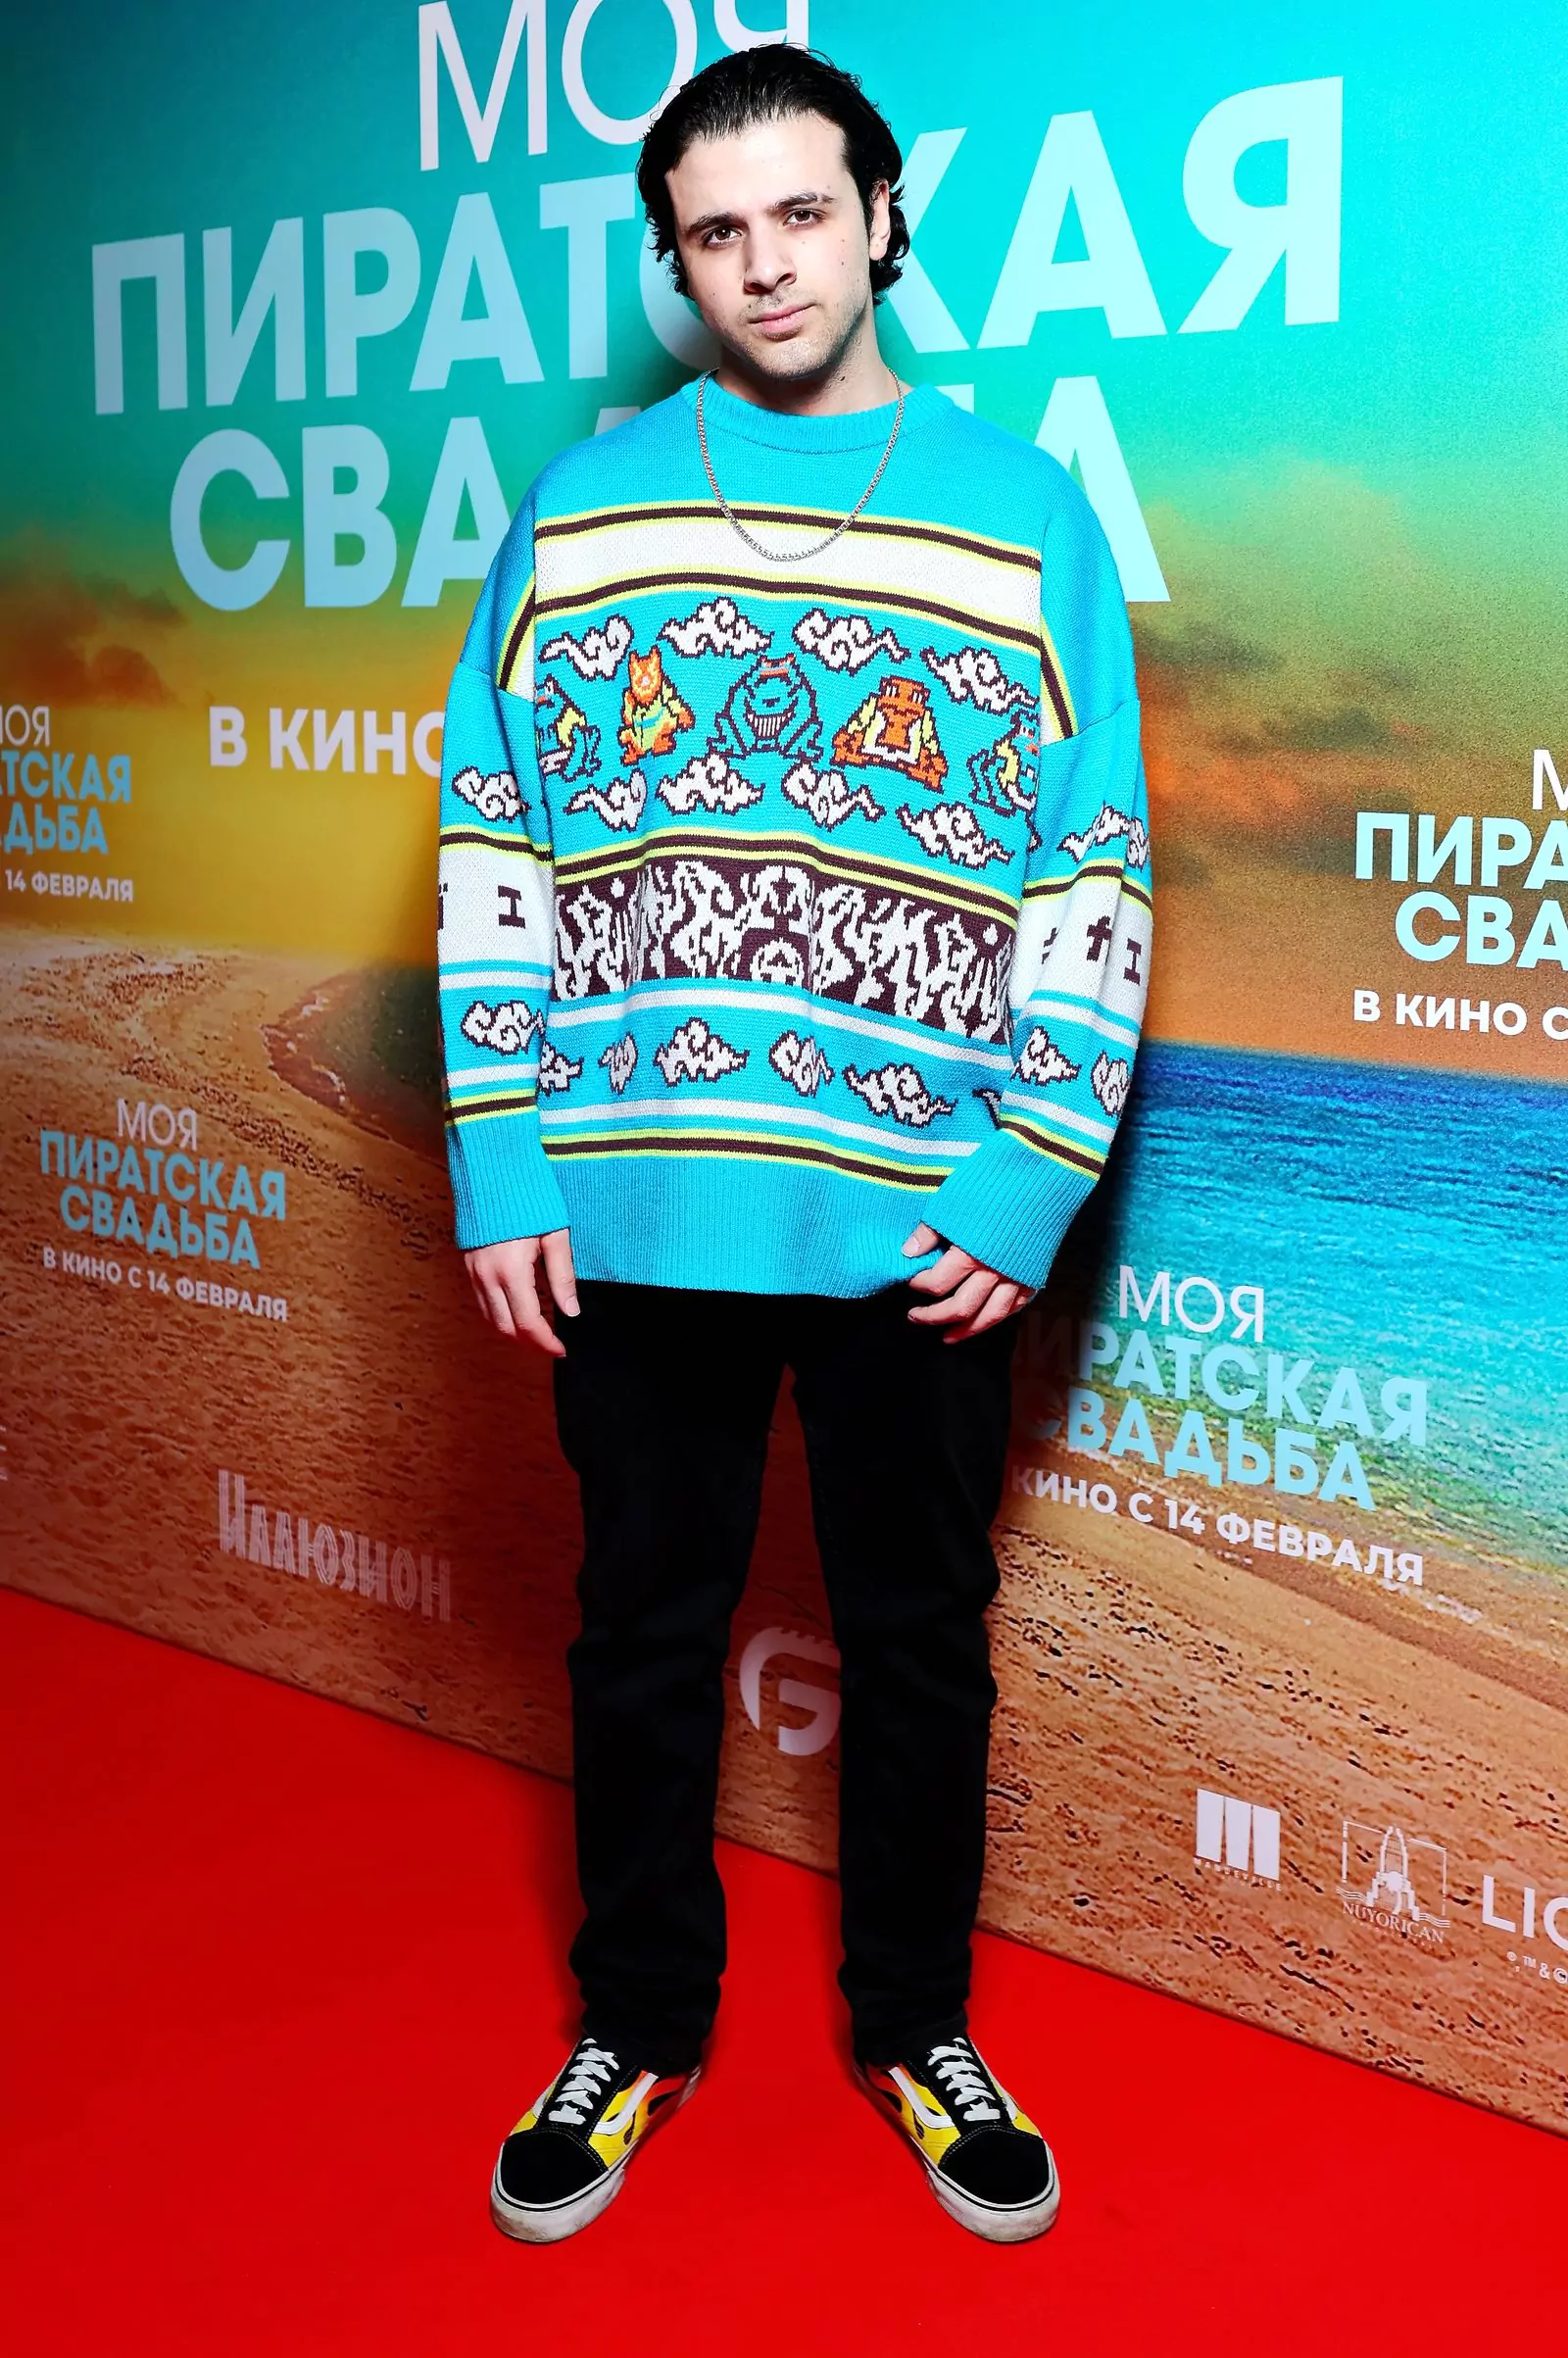 Эд Бризи на российской премьере комедии «Моя пиратская свадьба», 13 февраля 2023 г.